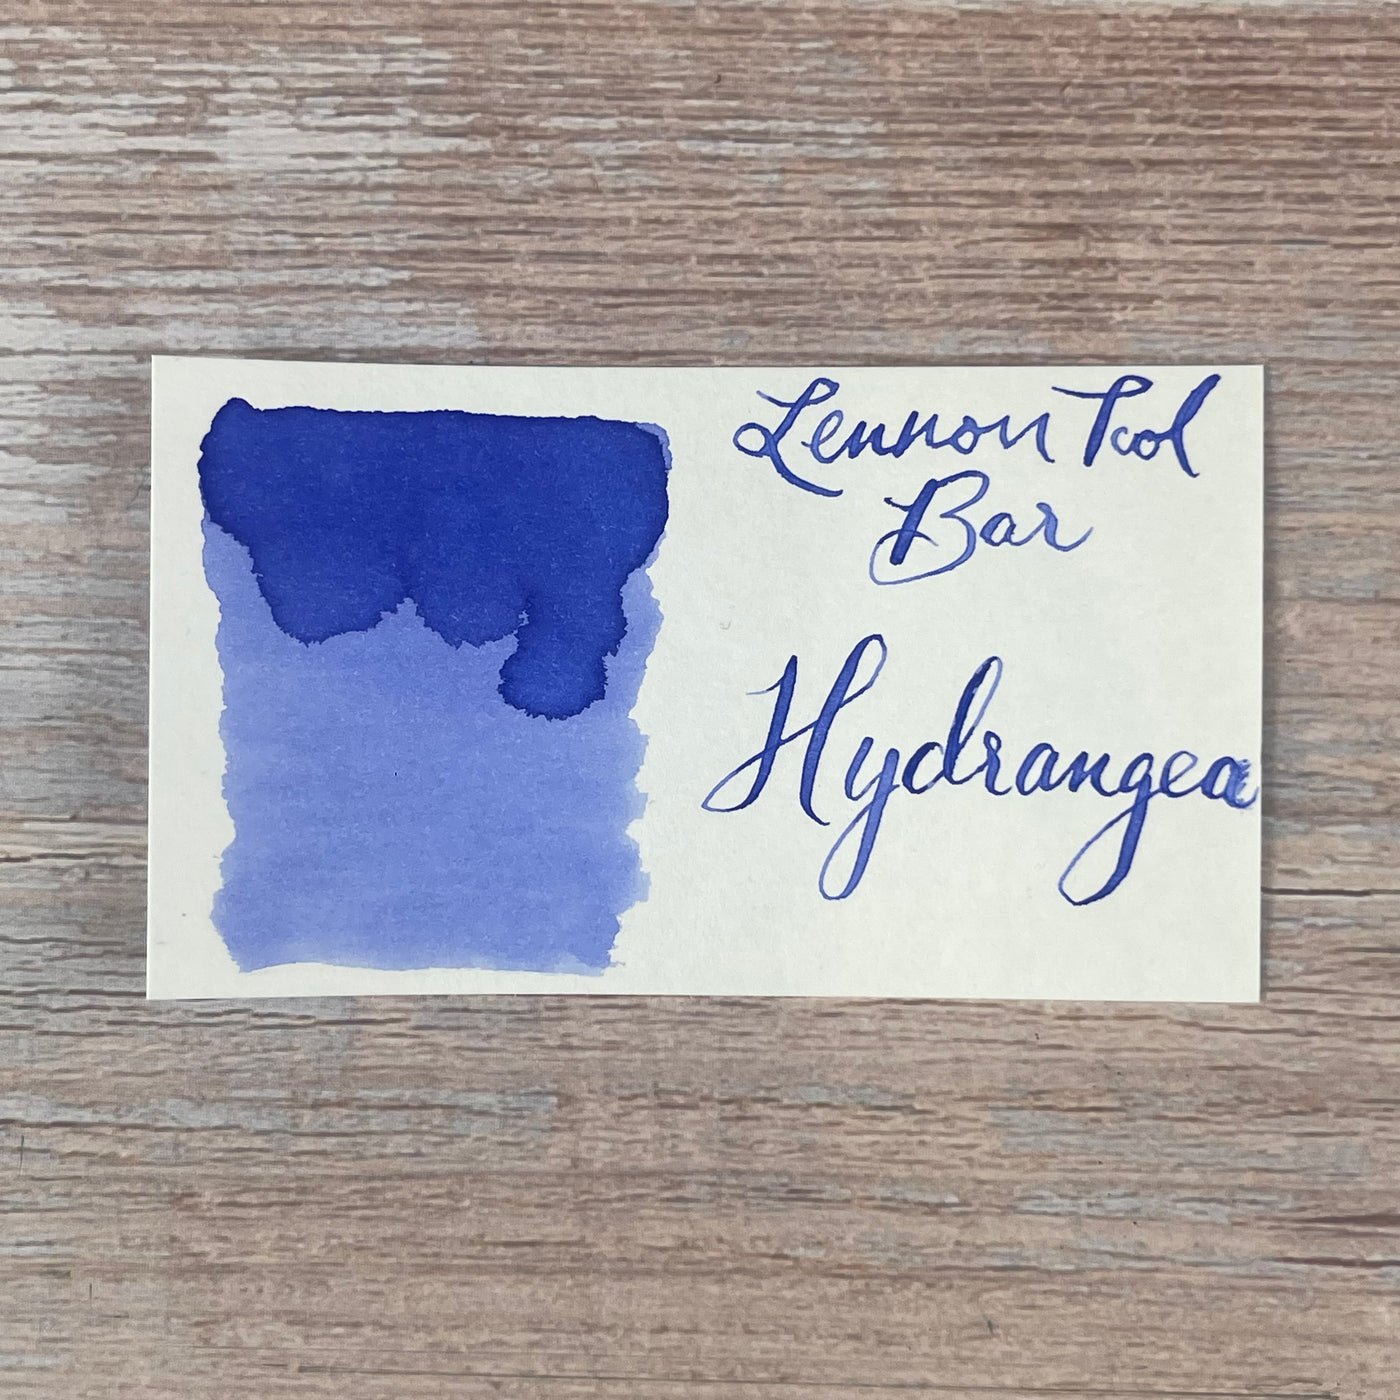 Lennon Tool Bar Hydrangea - 30ml Bottled Ink